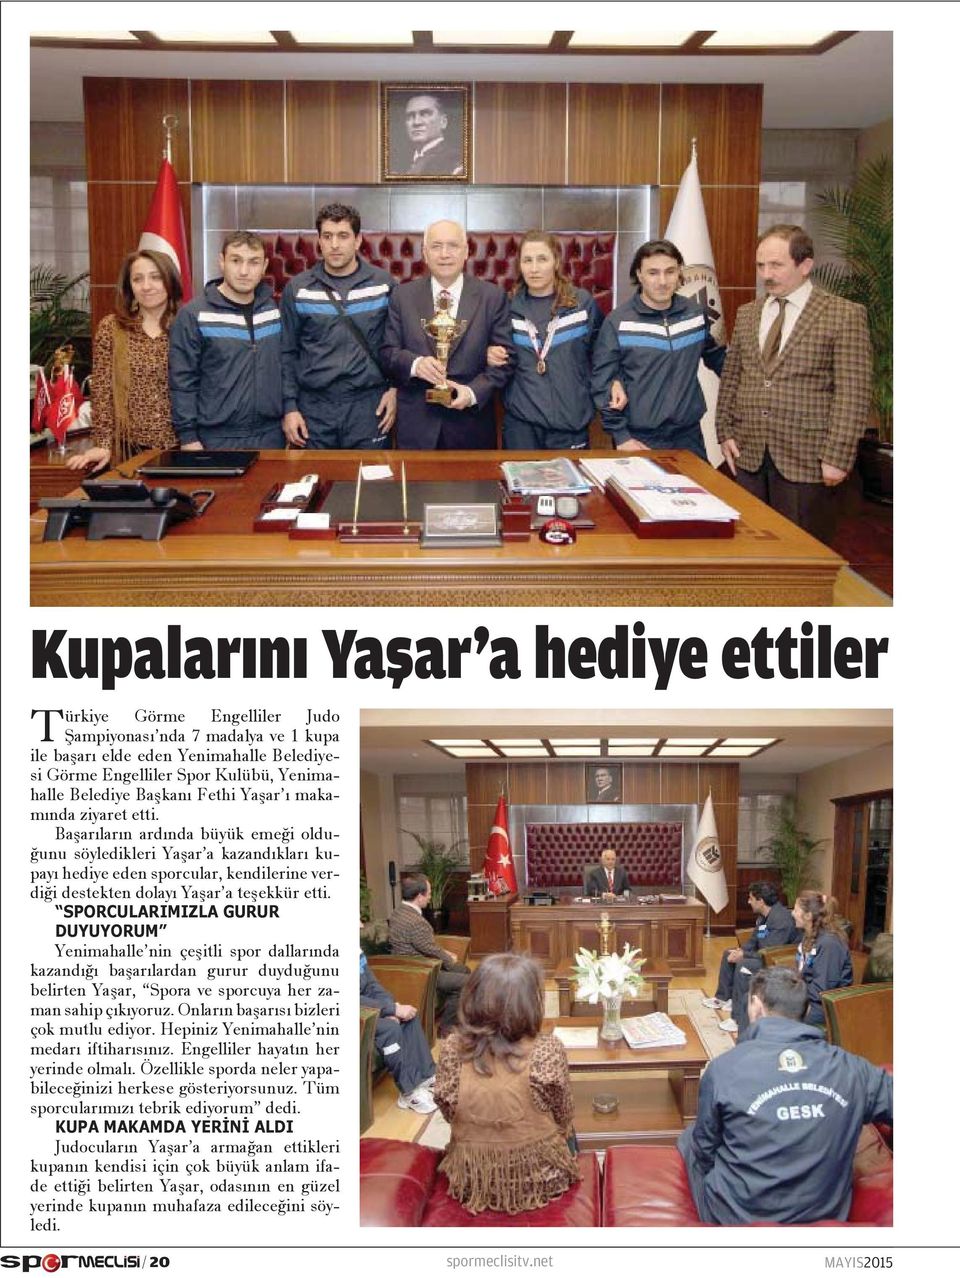 Başarıların ardında büyük emeği olduğunu söyledikleri Yaşar a kazandıkları kupayı hediye eden sporcular, kendilerine verdiği destekten dolayı Yaşar a teşekkür etti.